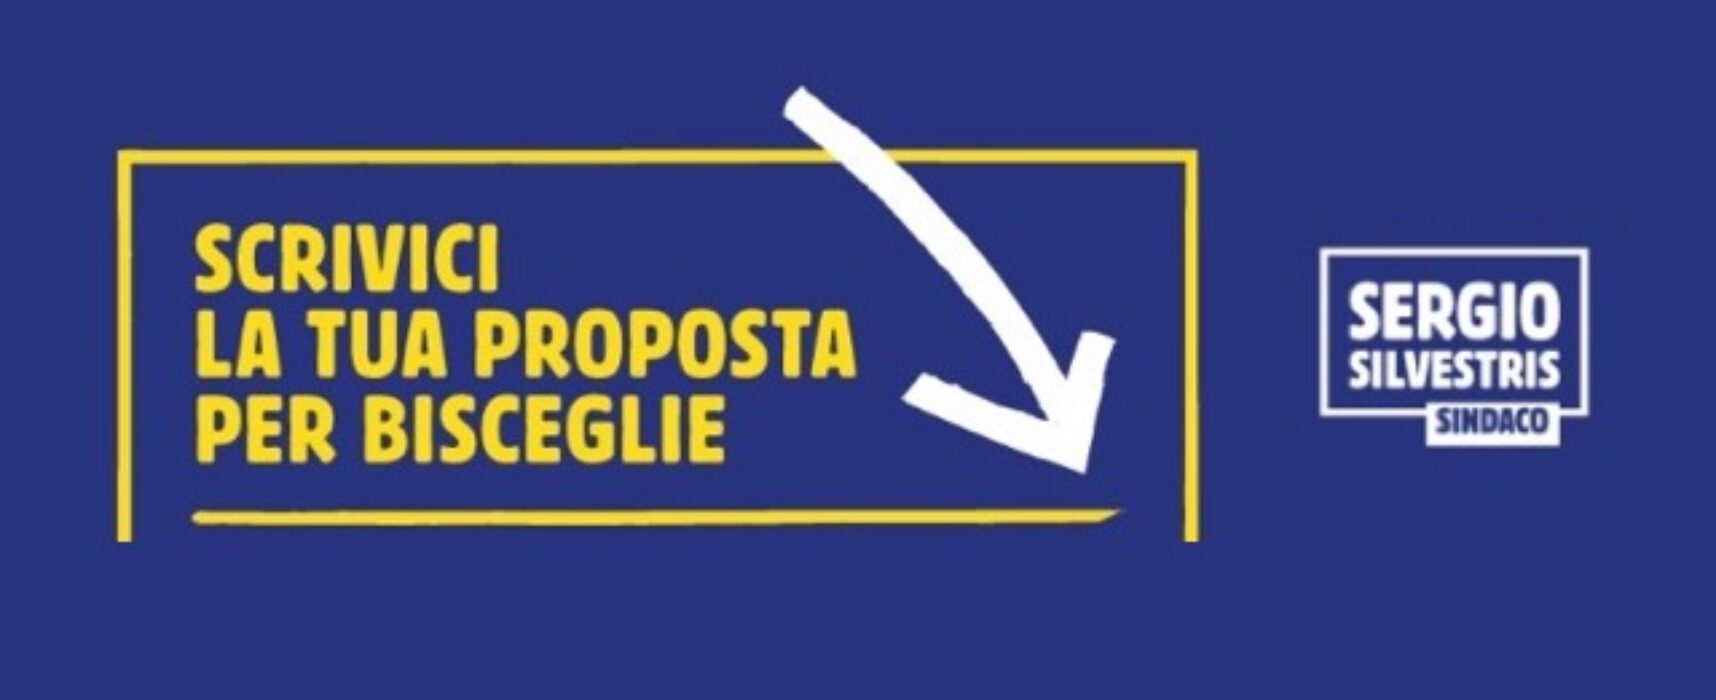 Sergio Silvestris: “Oltre 300 le proposte programmatiche inviate dai cittadini sul sito”